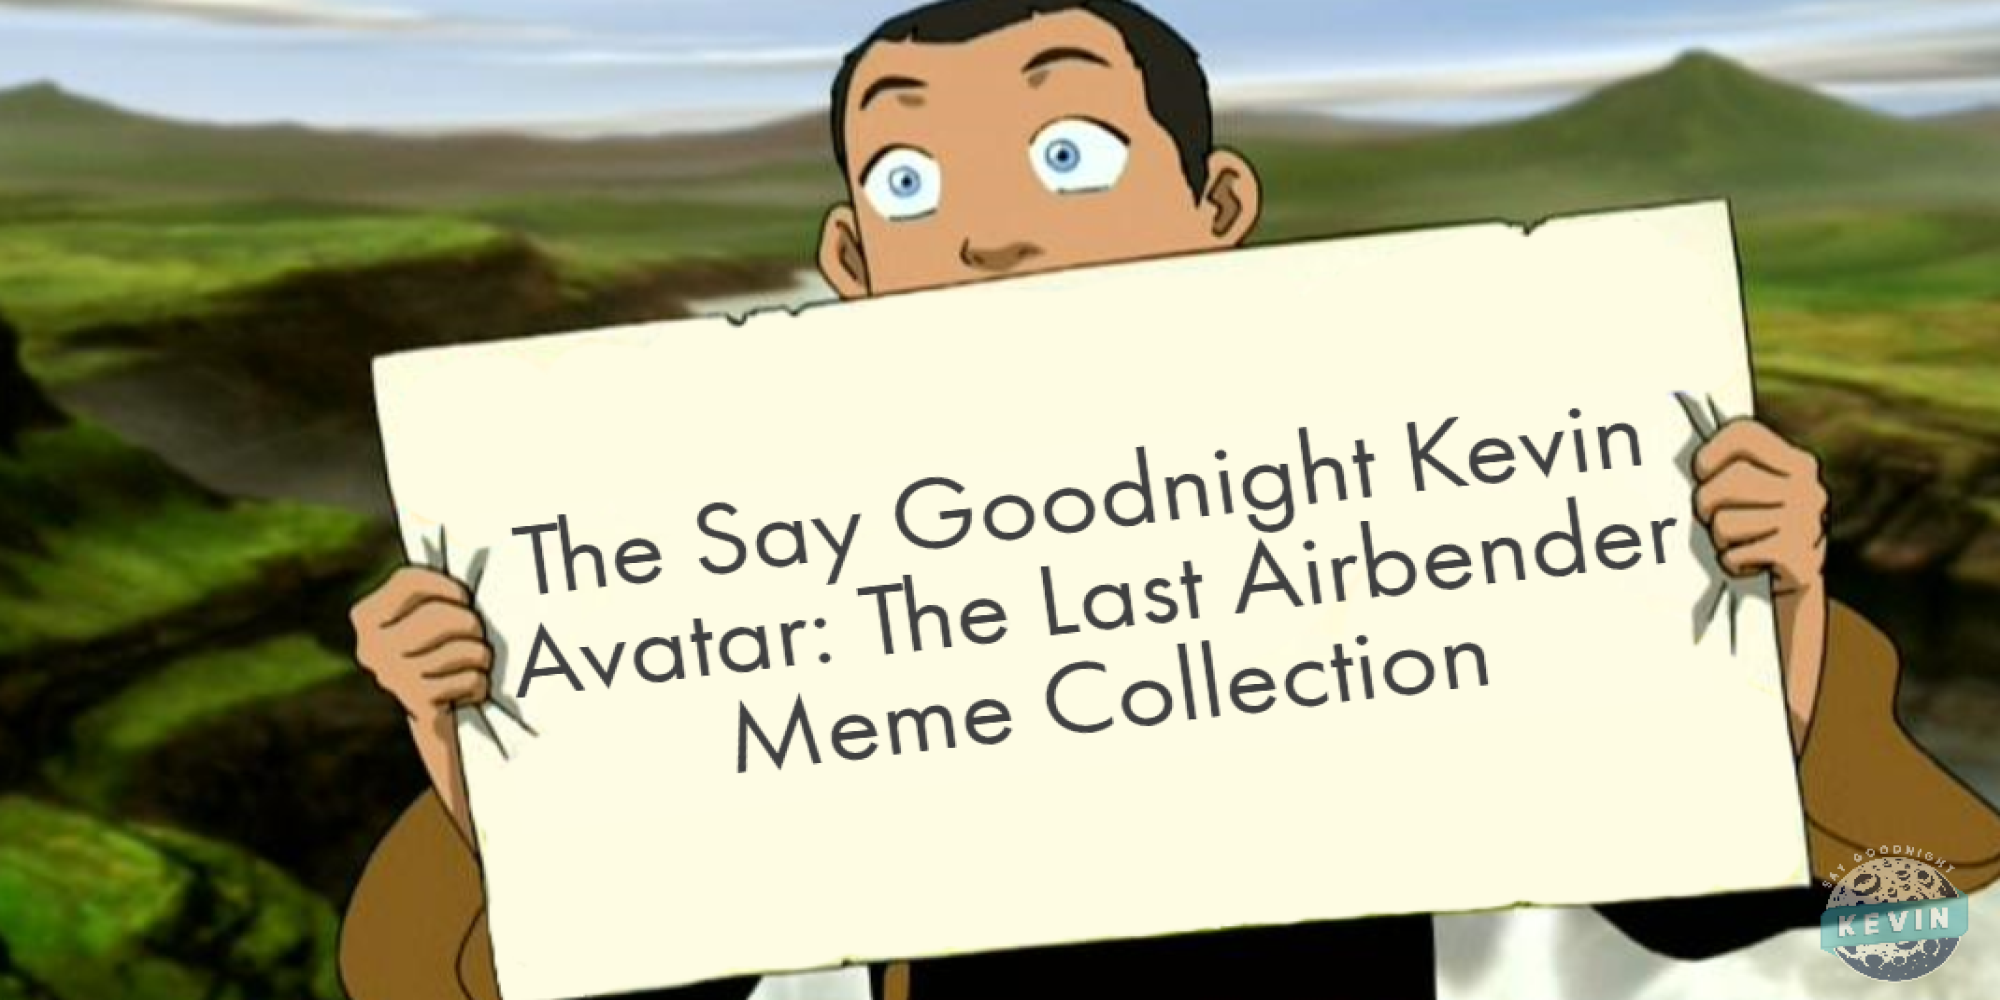 Bộ sưu tập Say Goodnight Kevin về Avatar: Người thủy tinh cuối cùng là cách tuyệt vời để thưởng thức những kiếp trước meme về bộ phim này. Chắc chắn bạn sẽ phải cười xỉu với những hình ảnh dễ thương và hài hước về nhân vật tuyệt vời này!